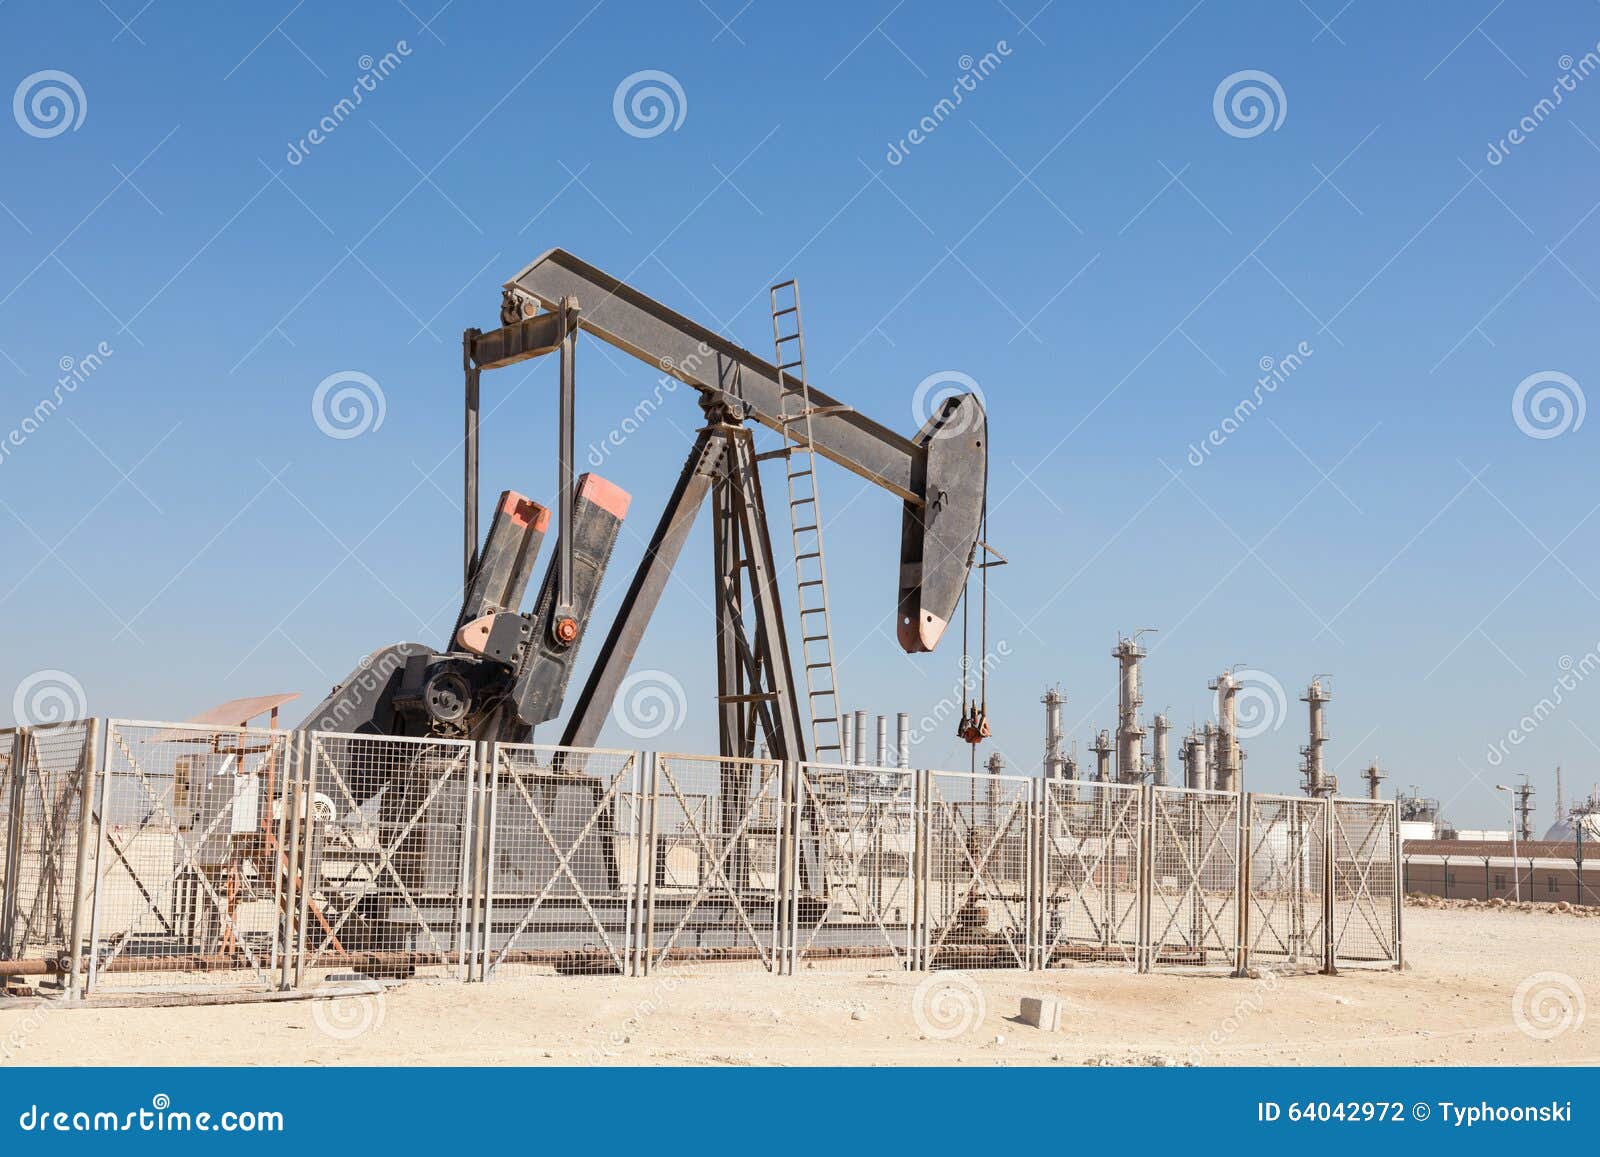 Öl-Pumpe in der Wüste stockfoto. Bild von erdöl, maschinerie